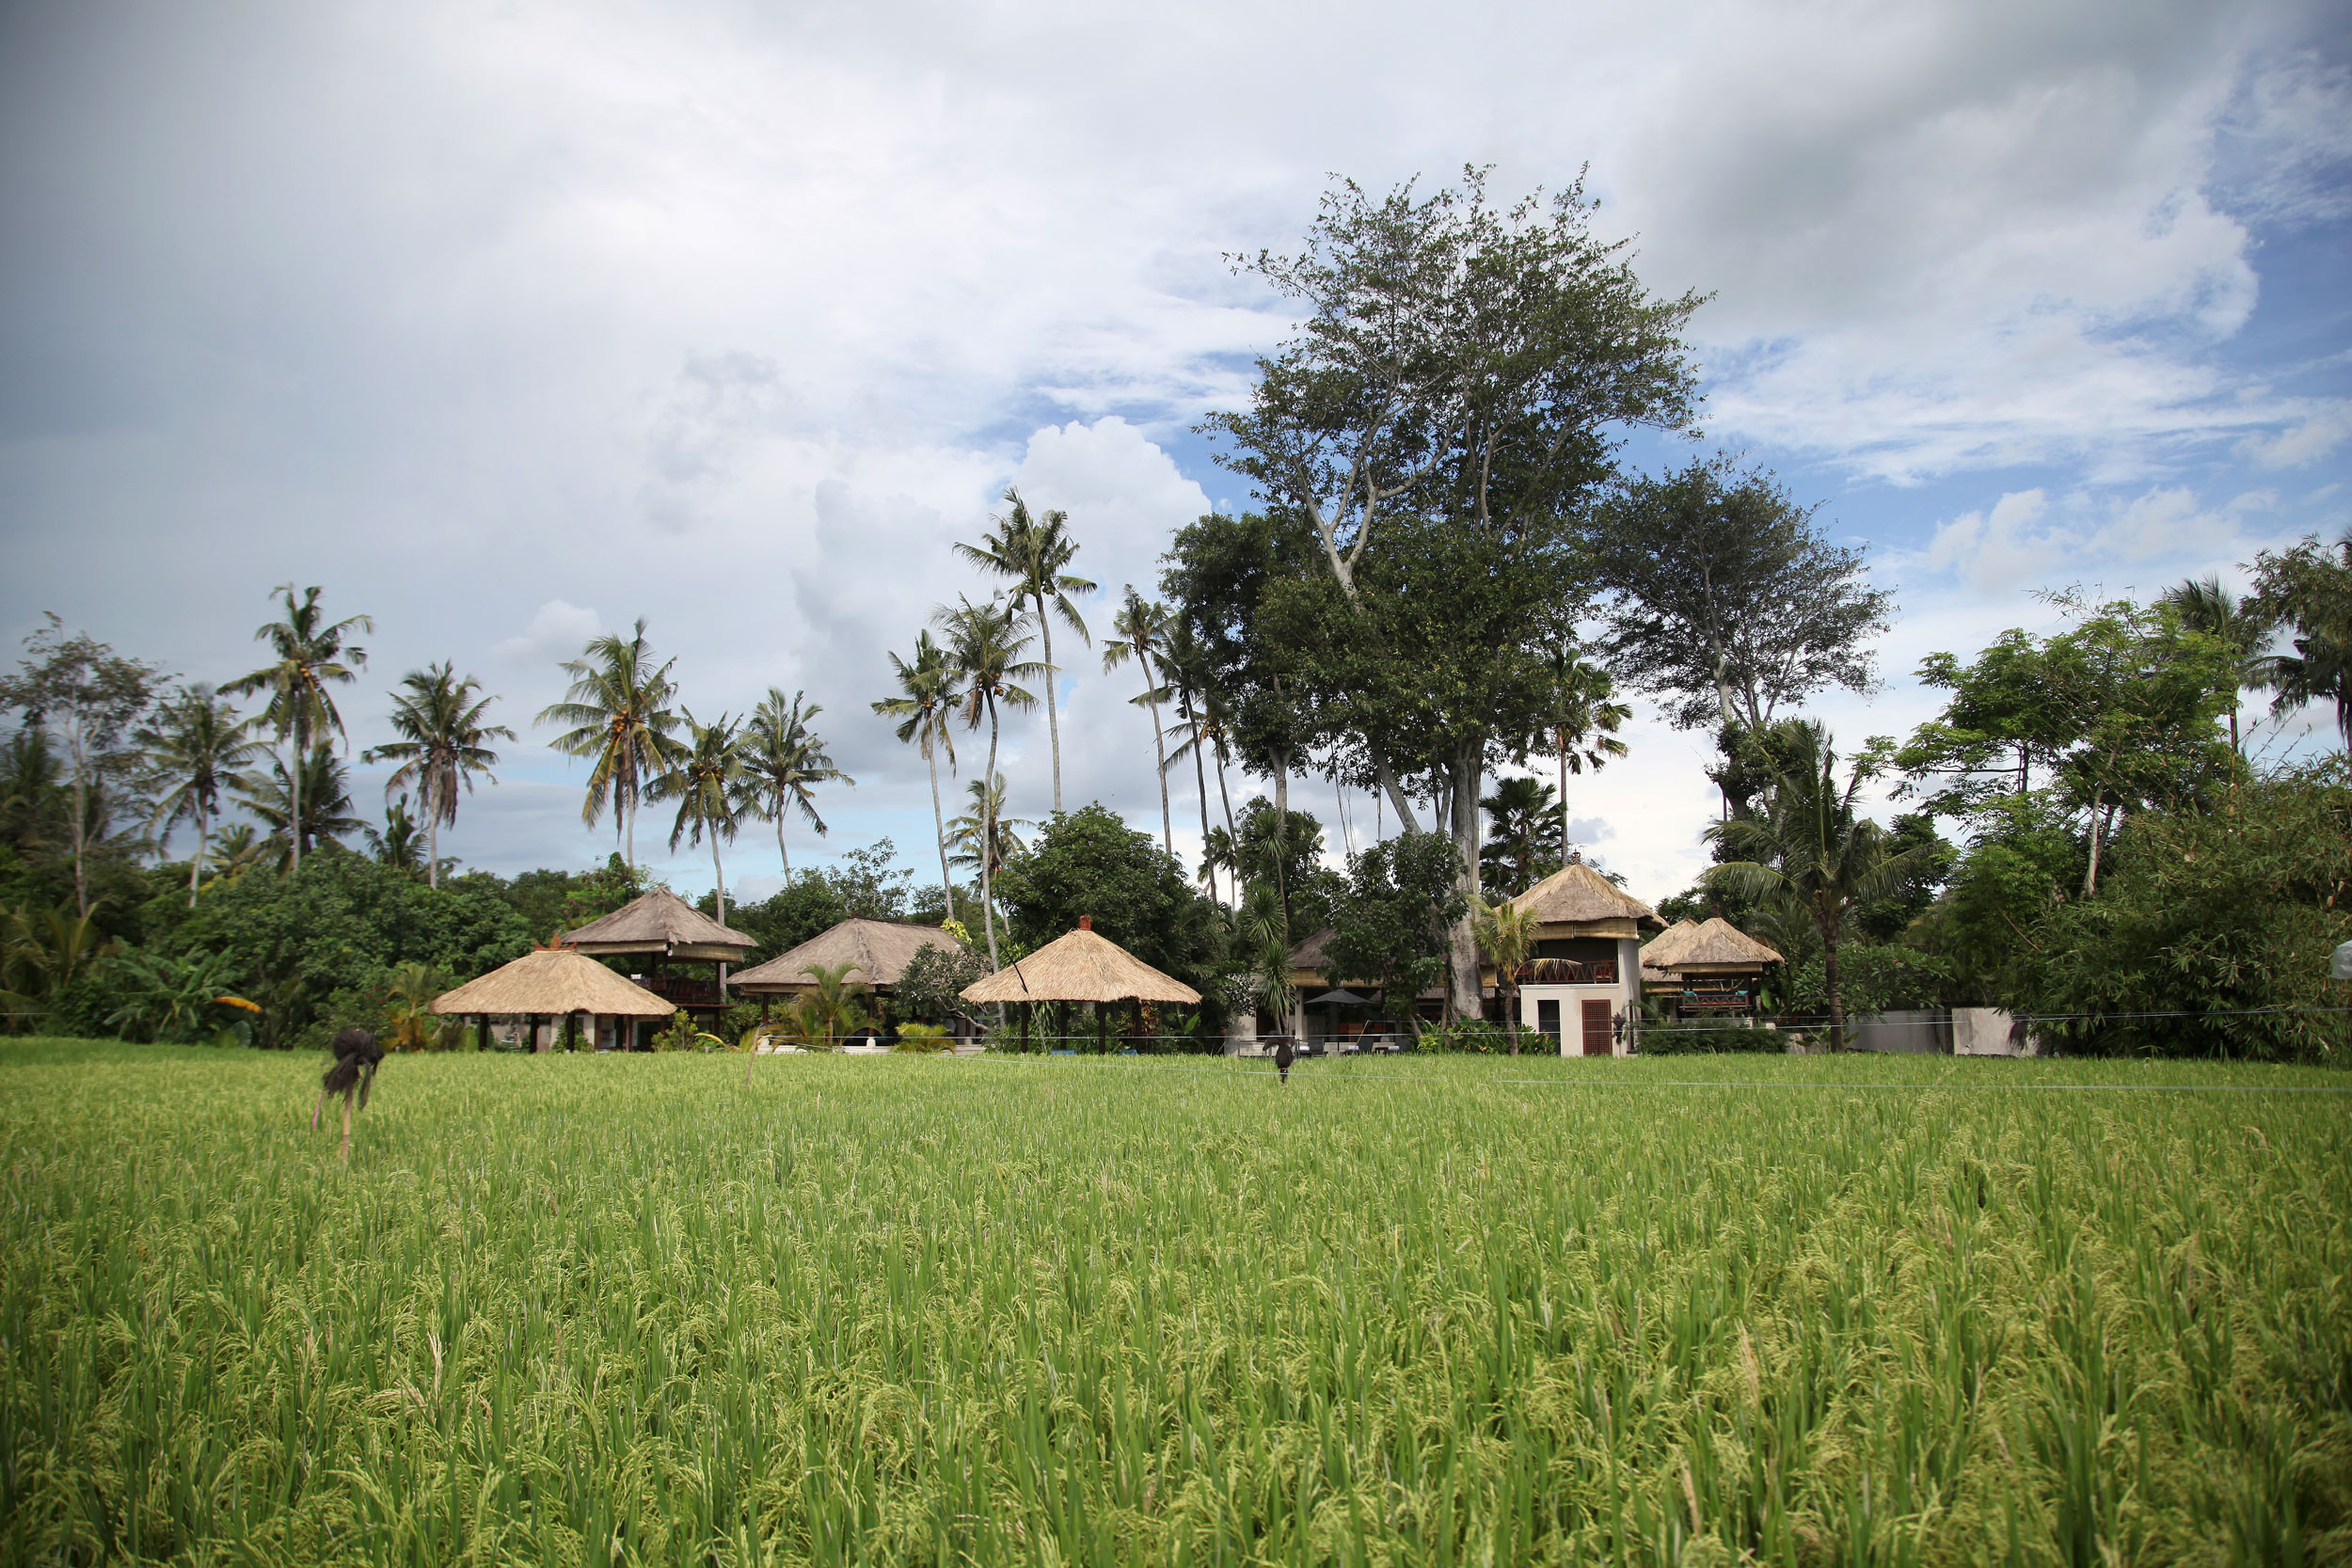 Idyllic ricefield setting at Tamu Seseh in Bali